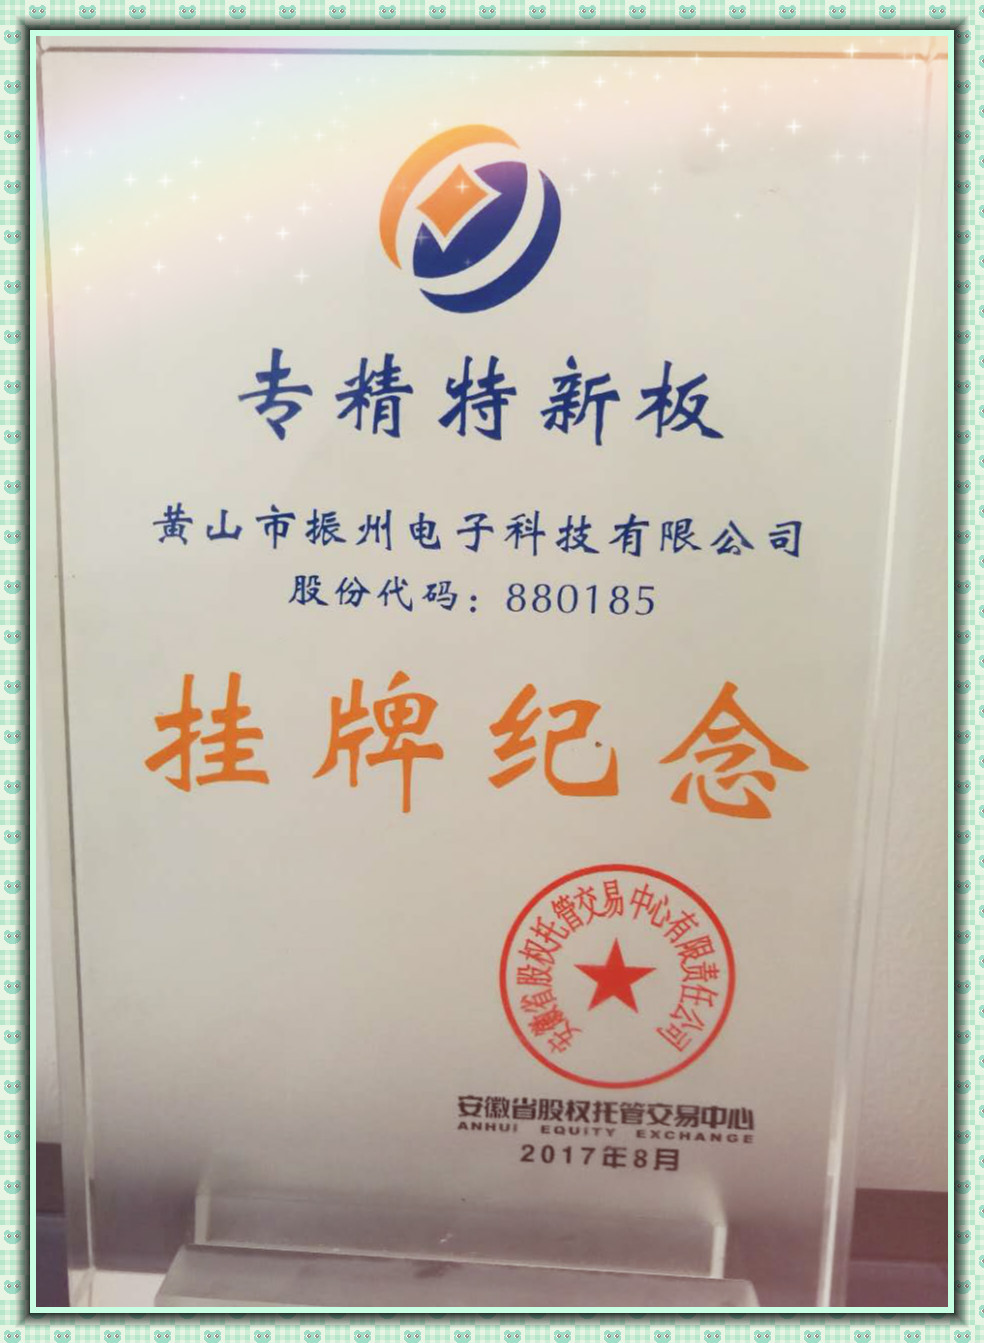 黄山市振州电子科技有限公司成功在安徽省“专精特新板”挂牌